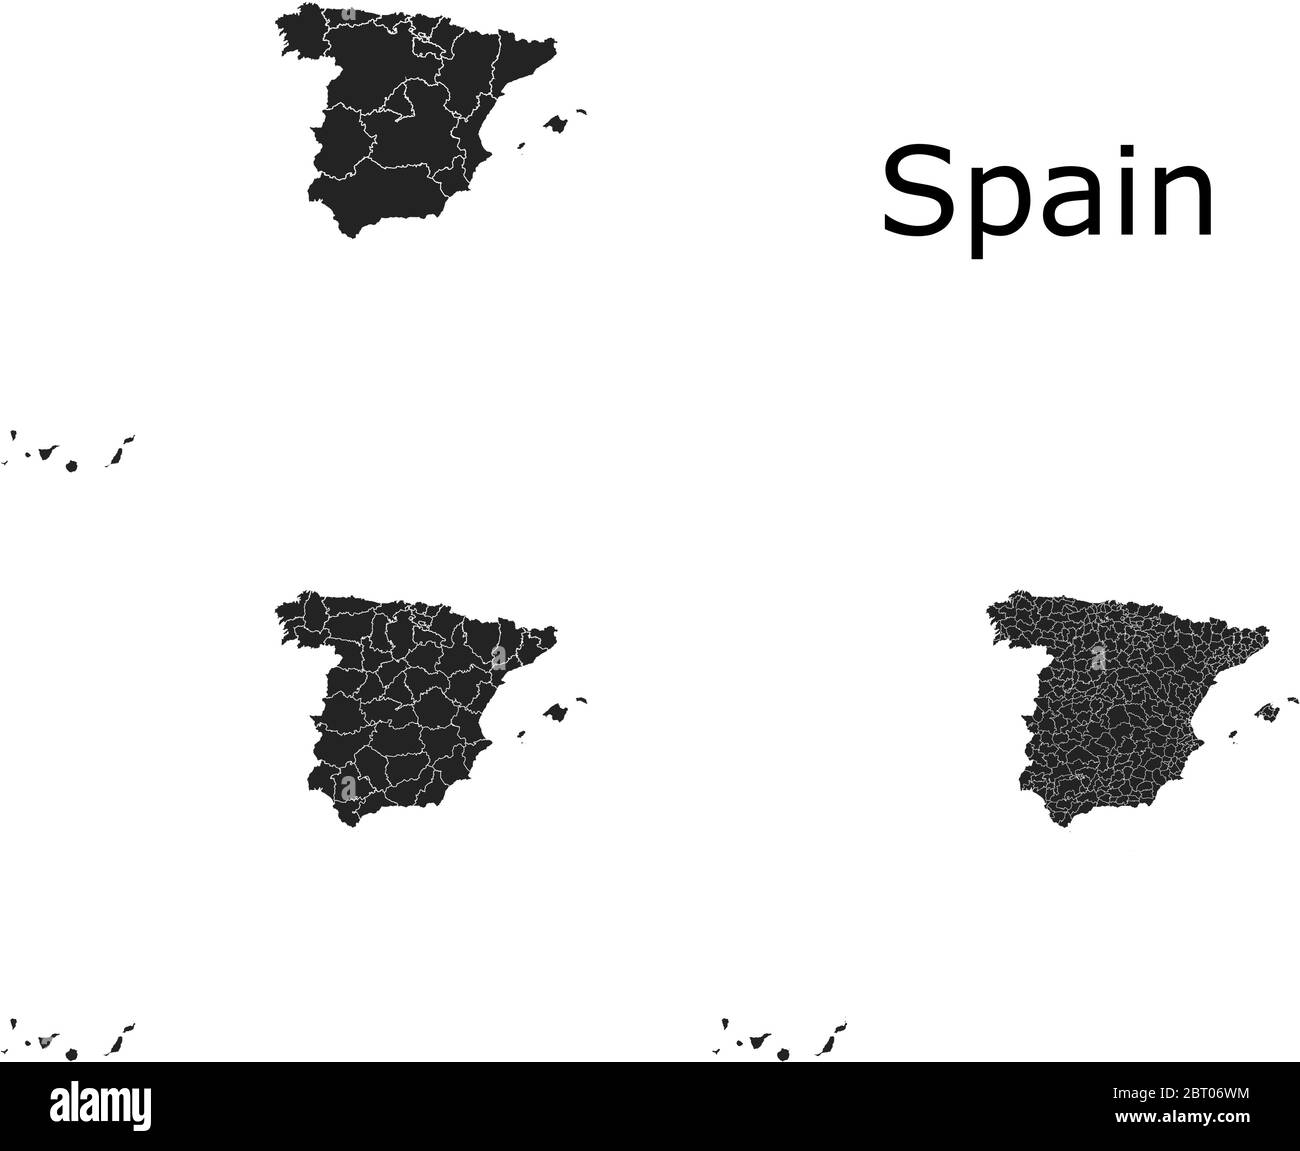 Espagne cartes vectorielles avec régions administratives, municipalités, départements, frontières Illustration de Vecteur